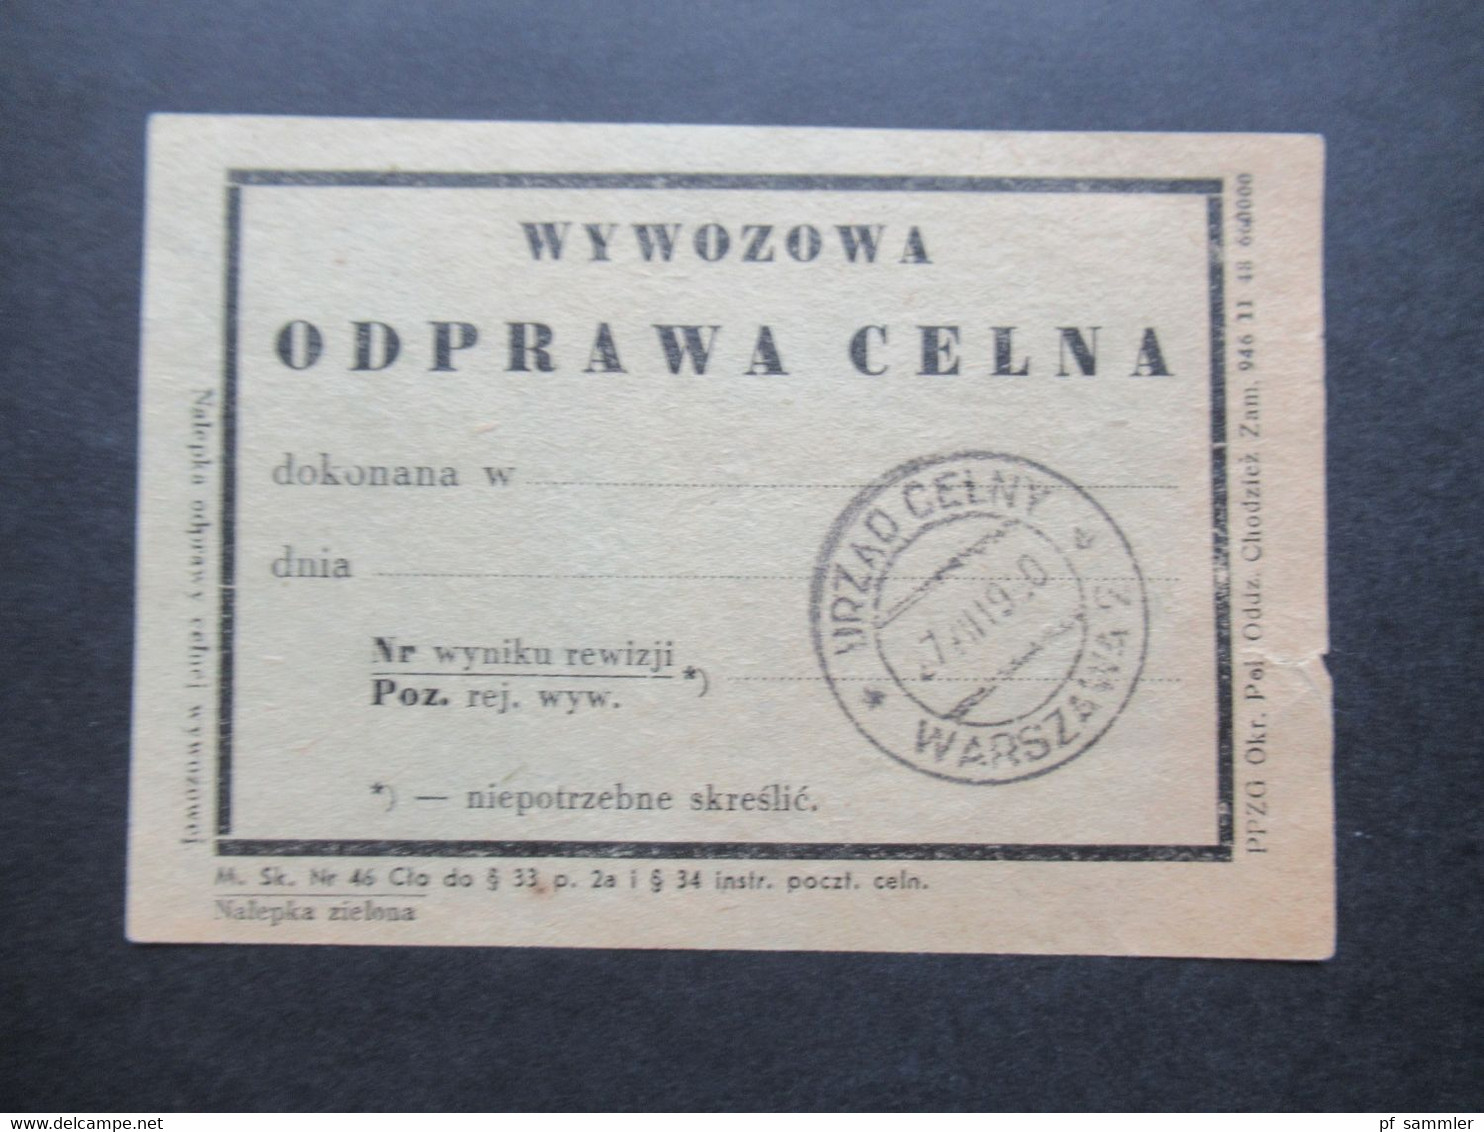 Polen 1950 Zoll Dokument Mit 2x Verschiedene Stempel Vordruck Warszawa Wywozowa Opdrawa Celna - Covers & Documents